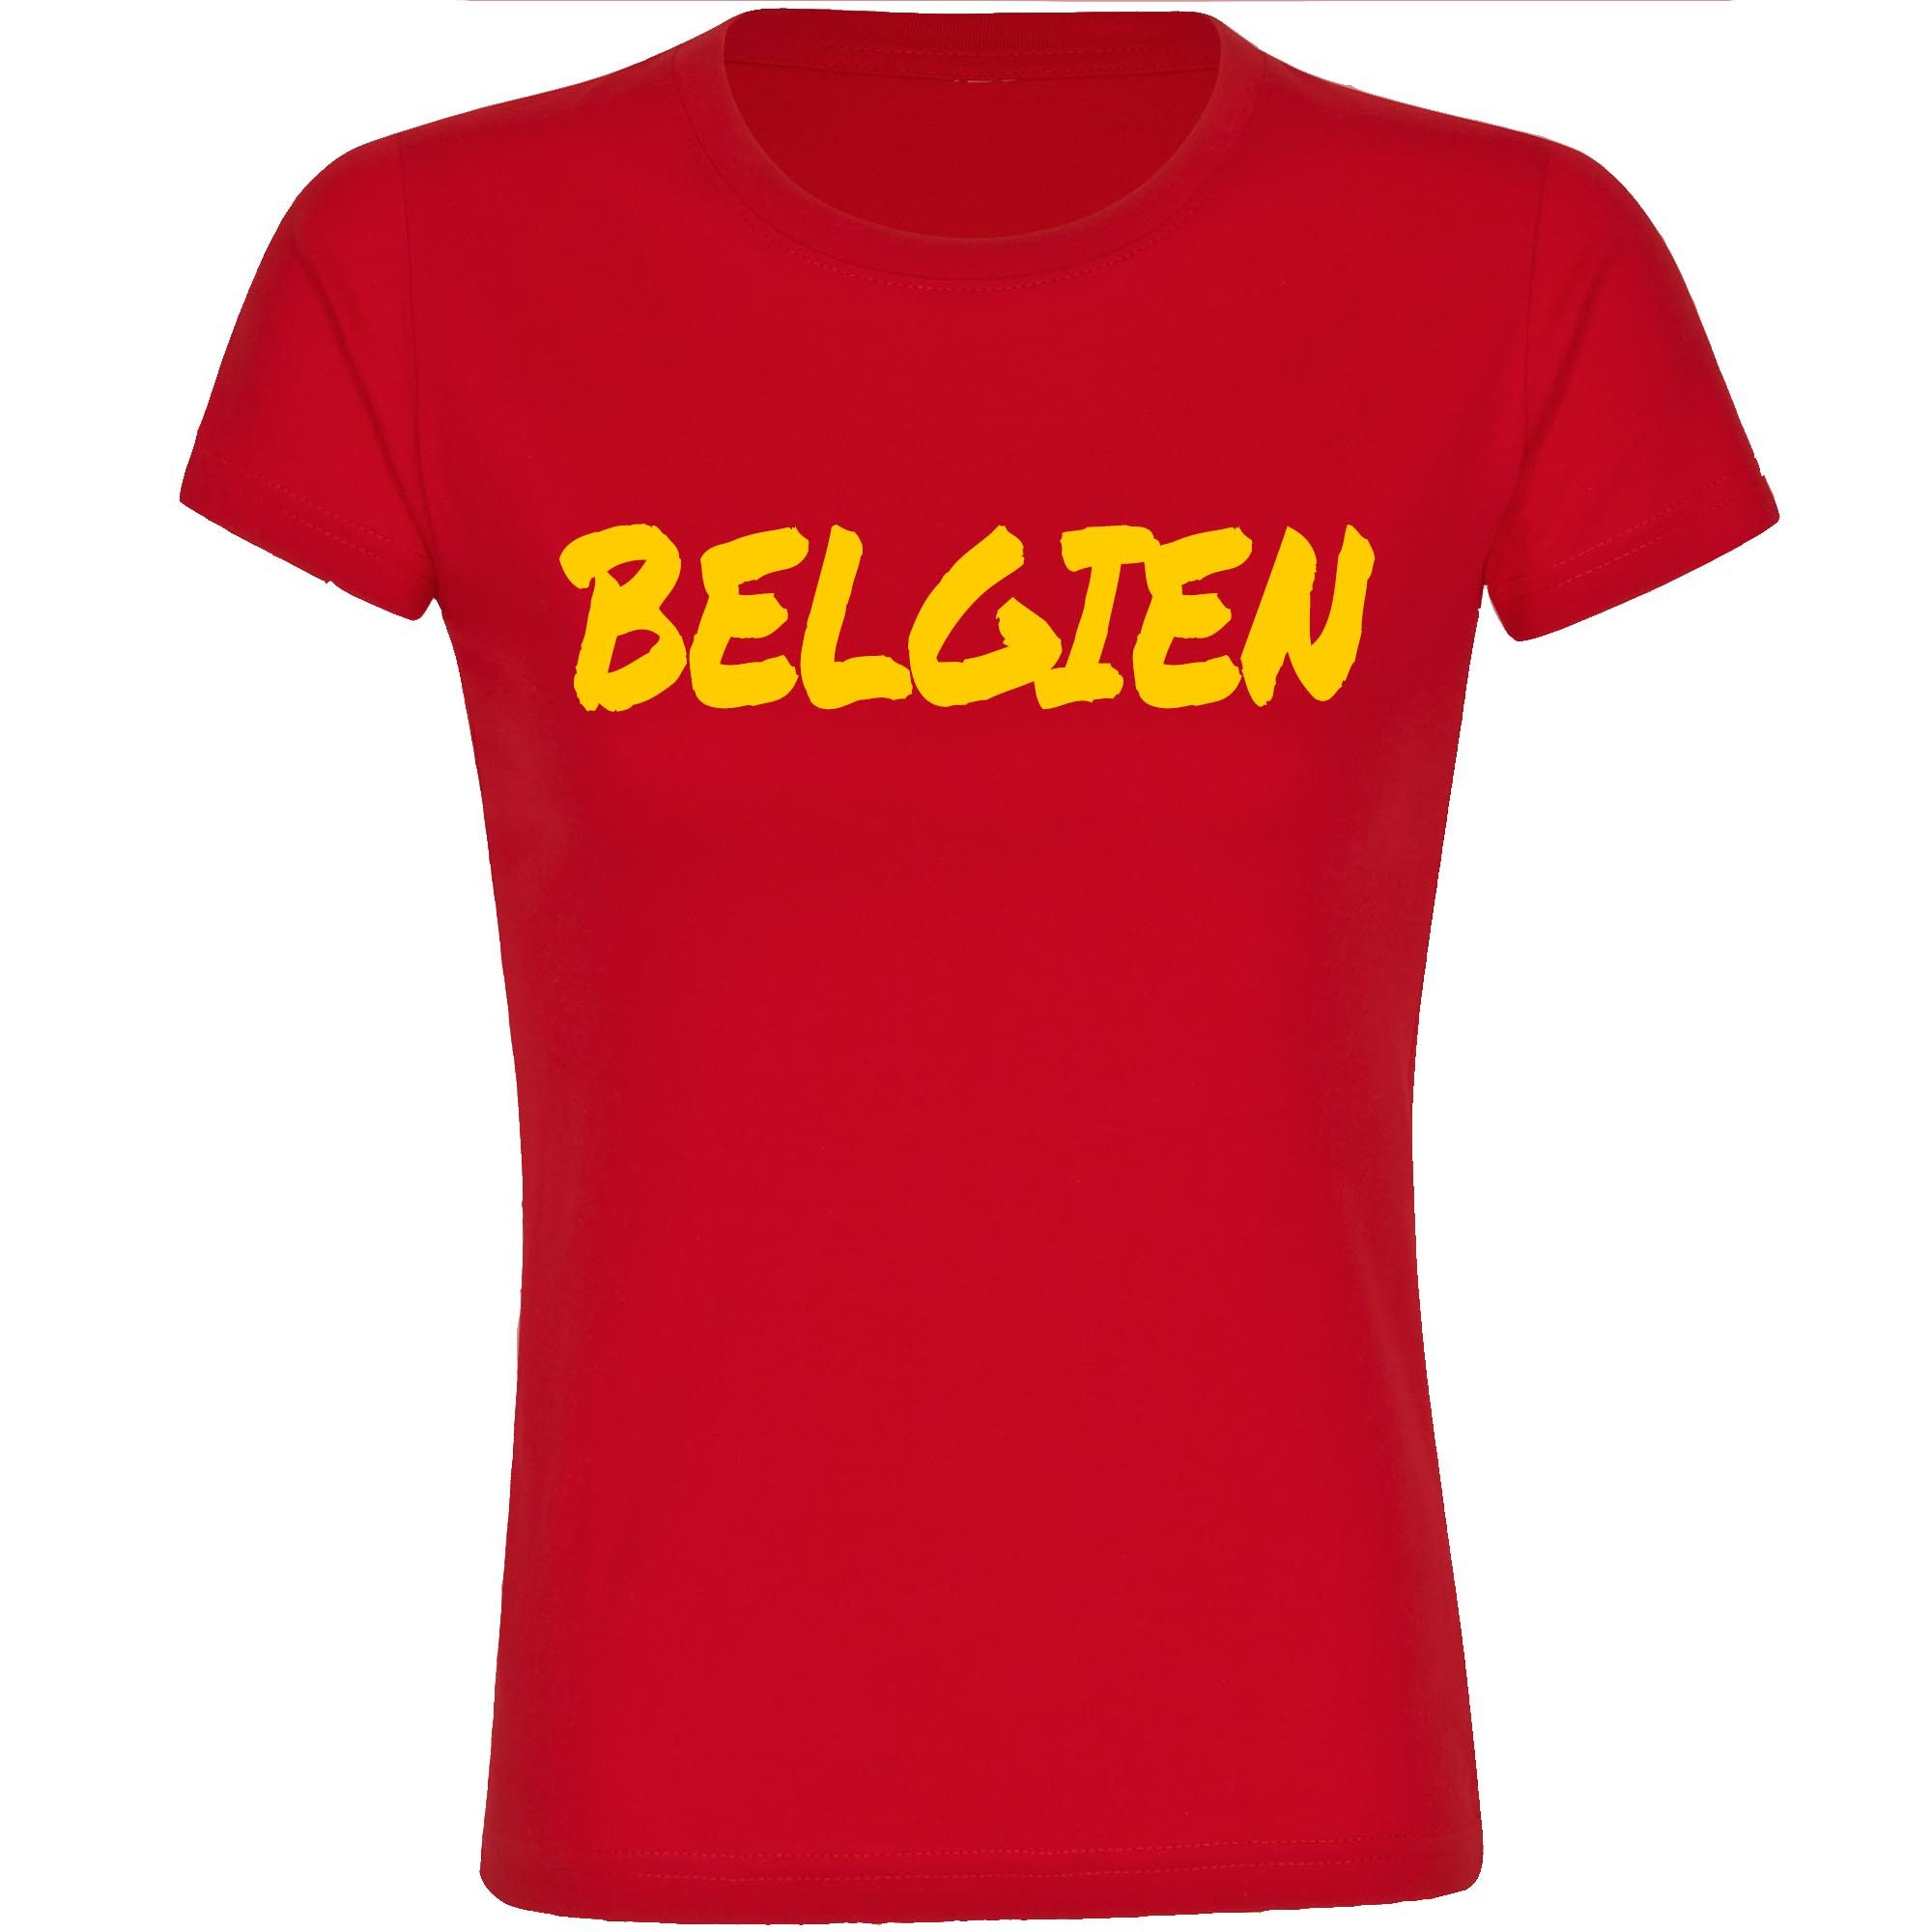 multifanshop T-Shirt Damen Belgien - Textmarker - Frauen